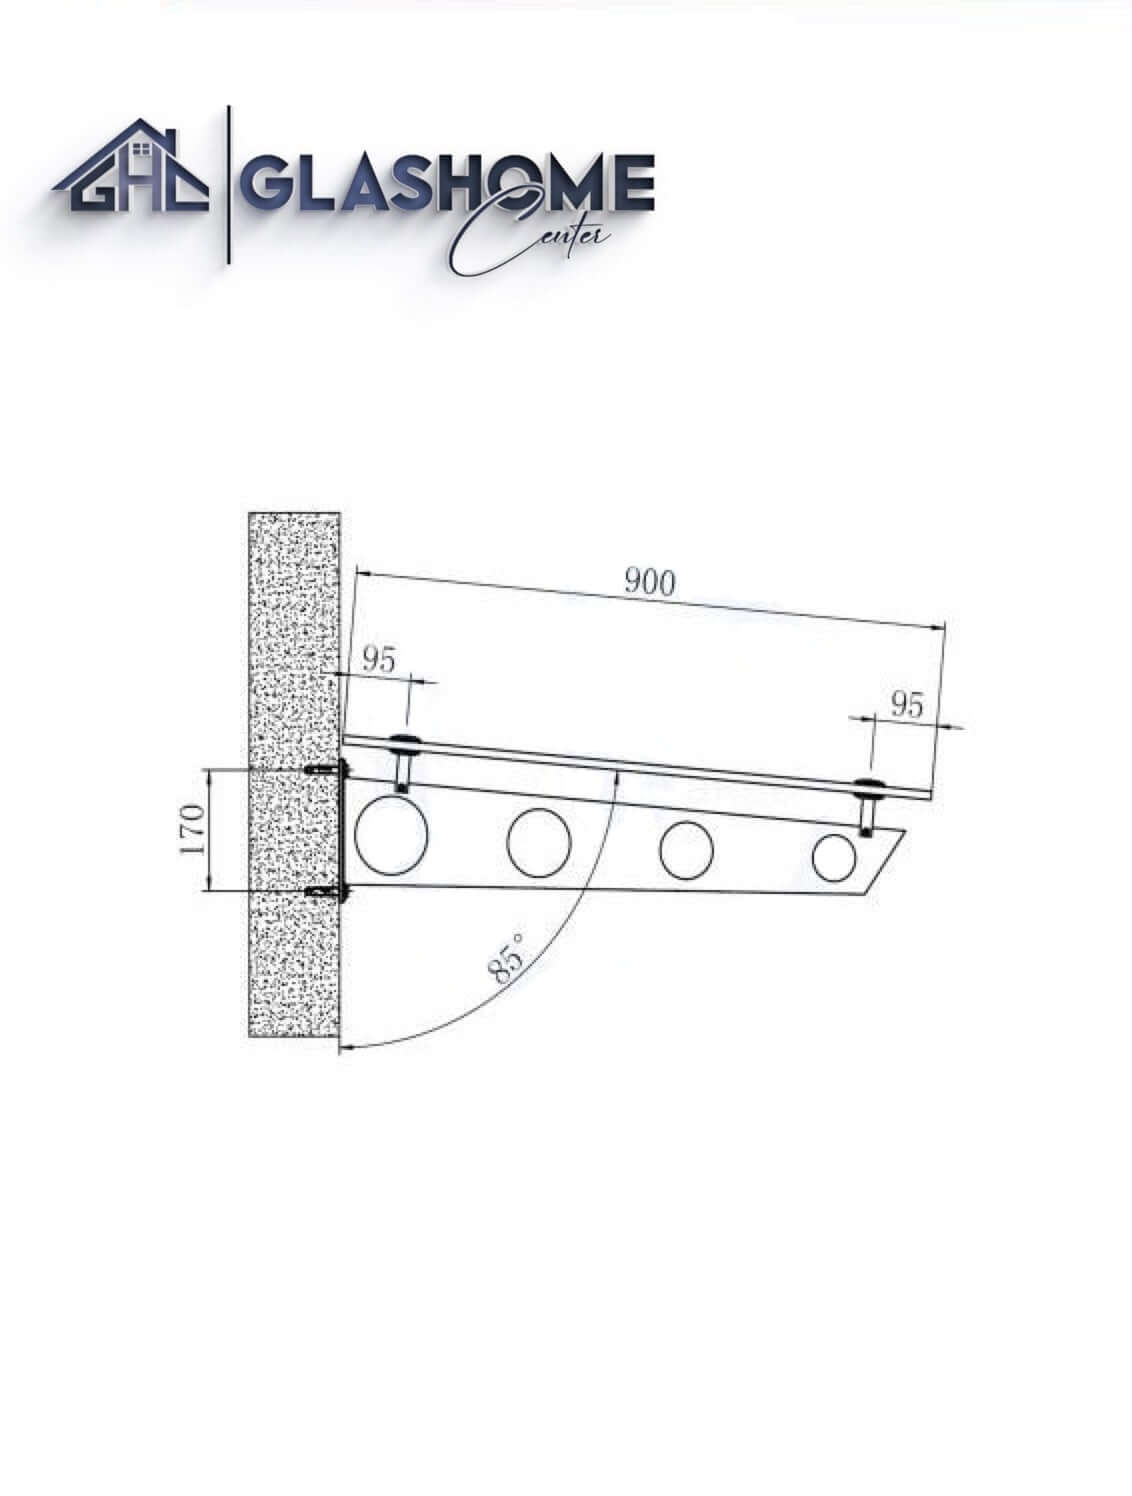 GlasHomeCenter - Glasvordach - Milchglas- 230x90cm - 13.1mm VSG - inkl. 3 Edelstahlhalterungen Variante "Stockholm"